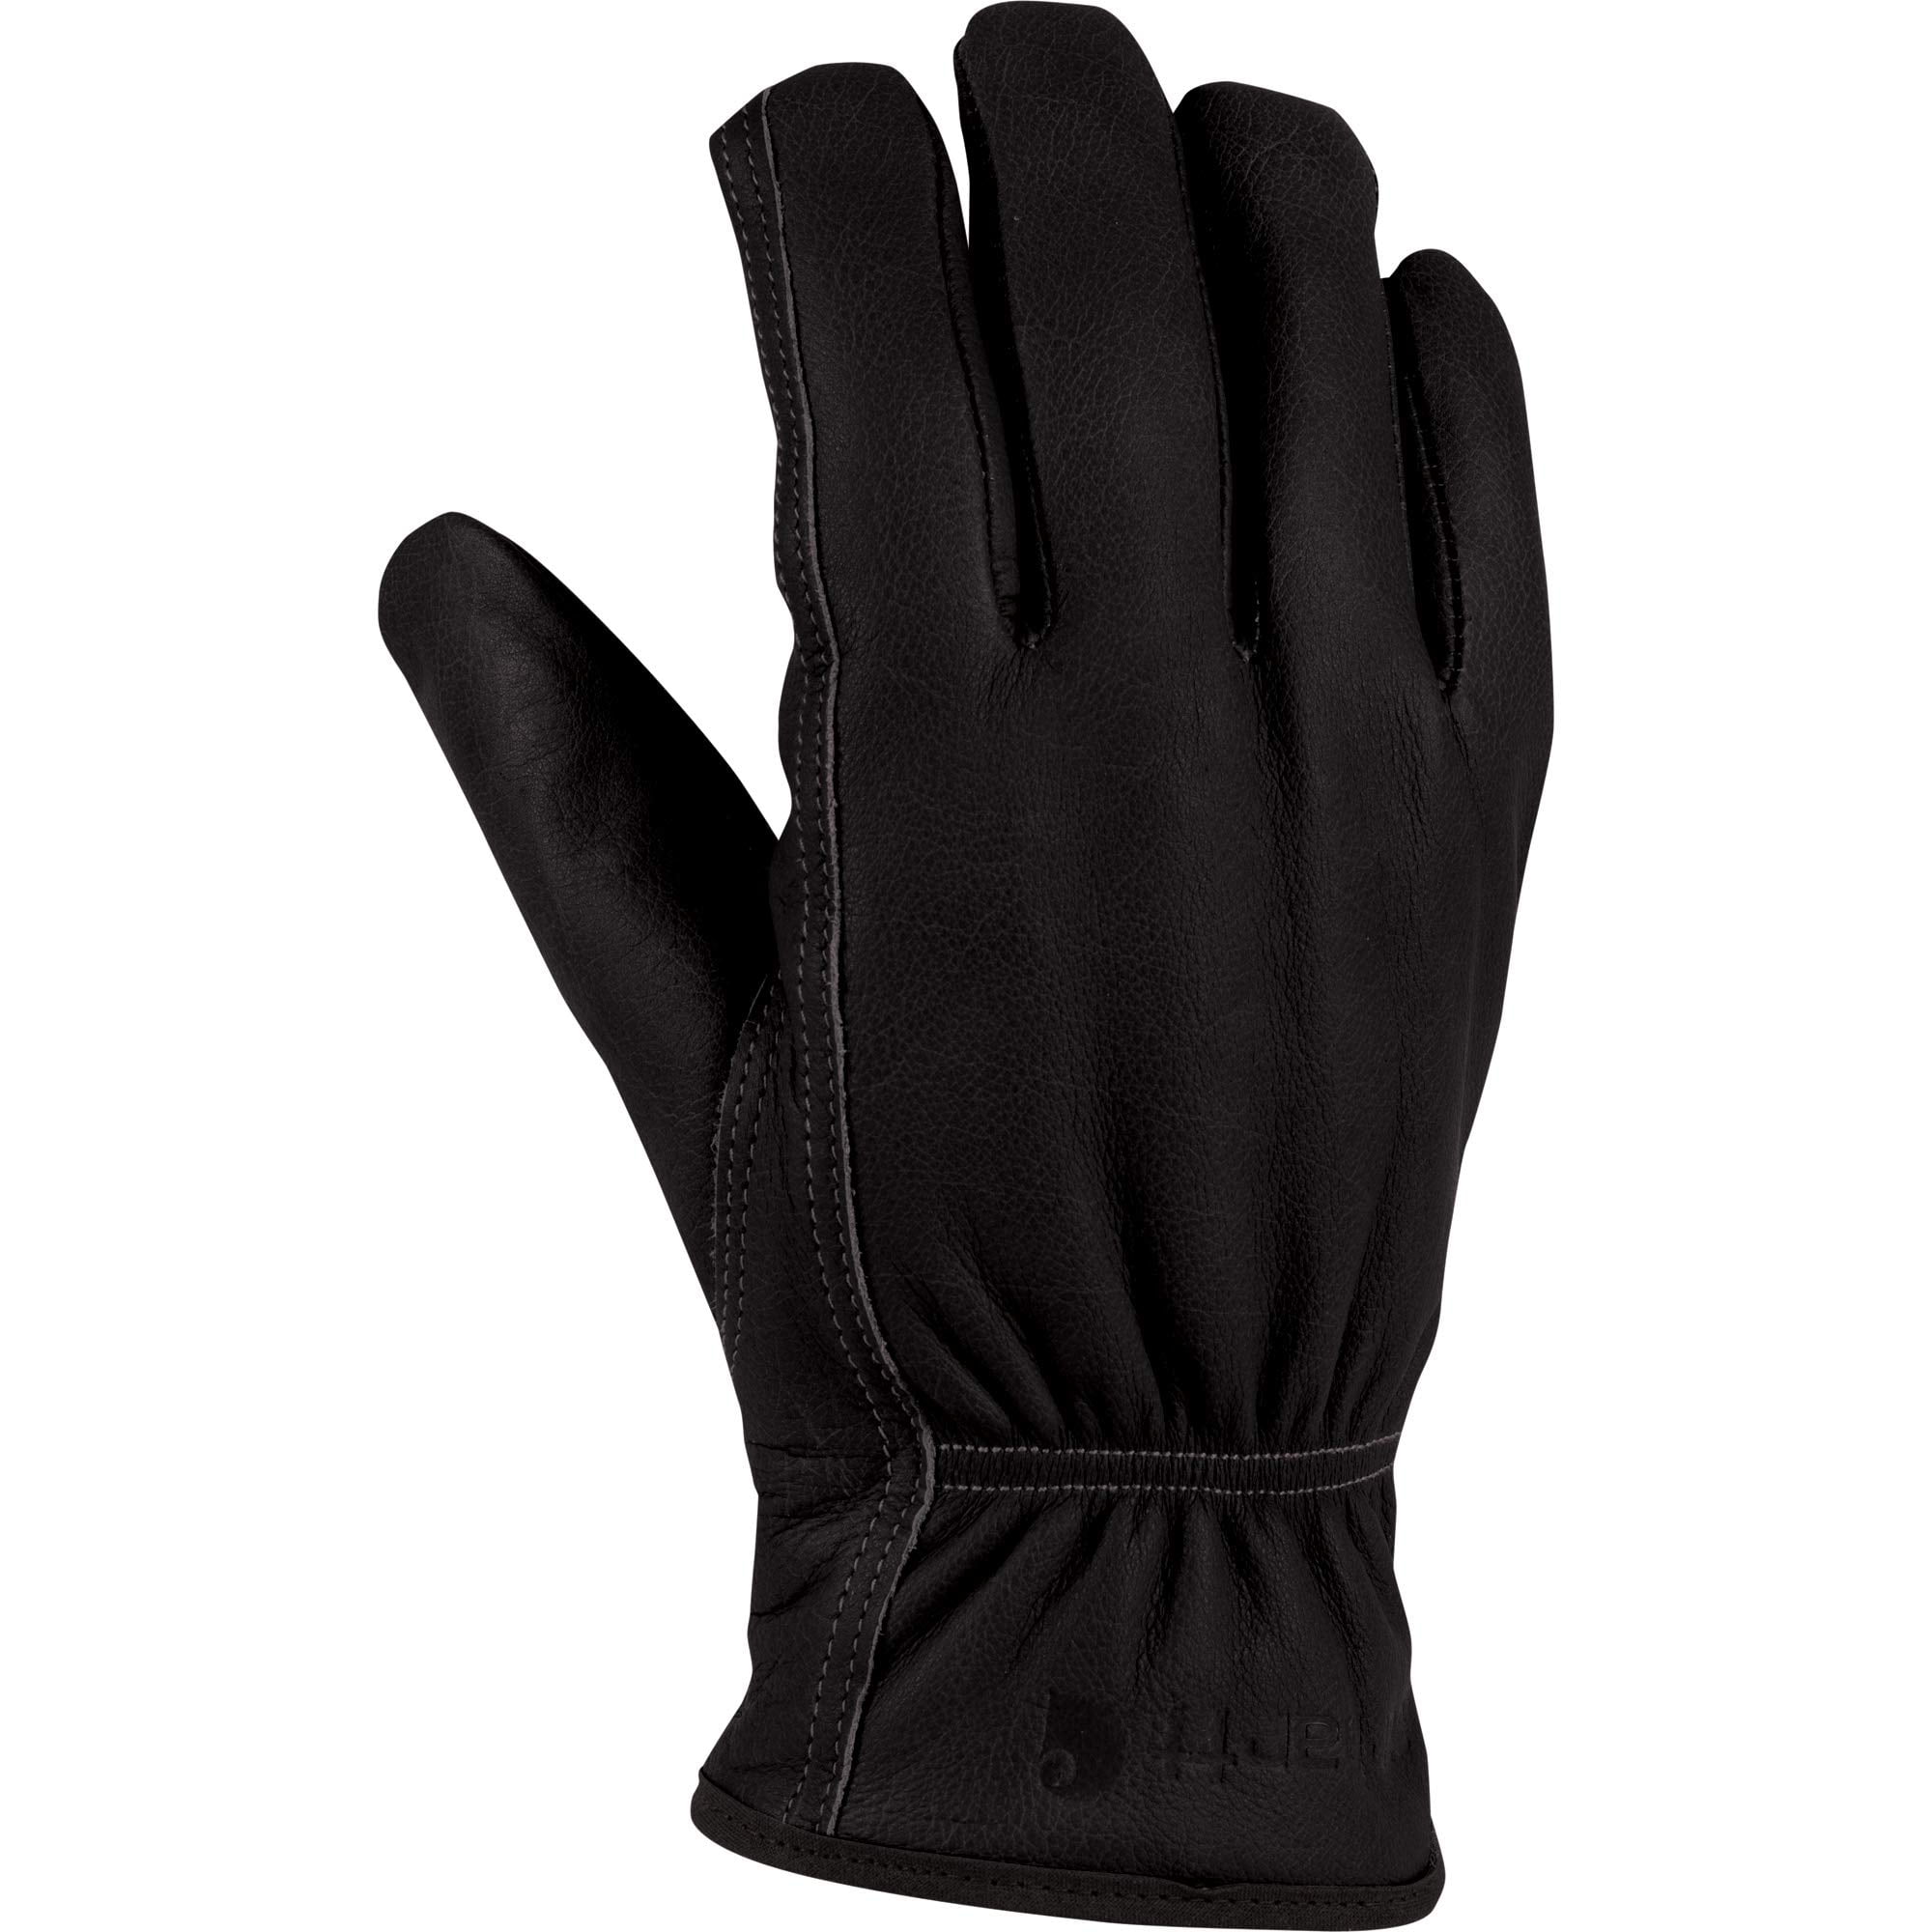 Carhartt Mens High Dexterity Quick Work Flex Gloves Size XL Grey/Black A547 